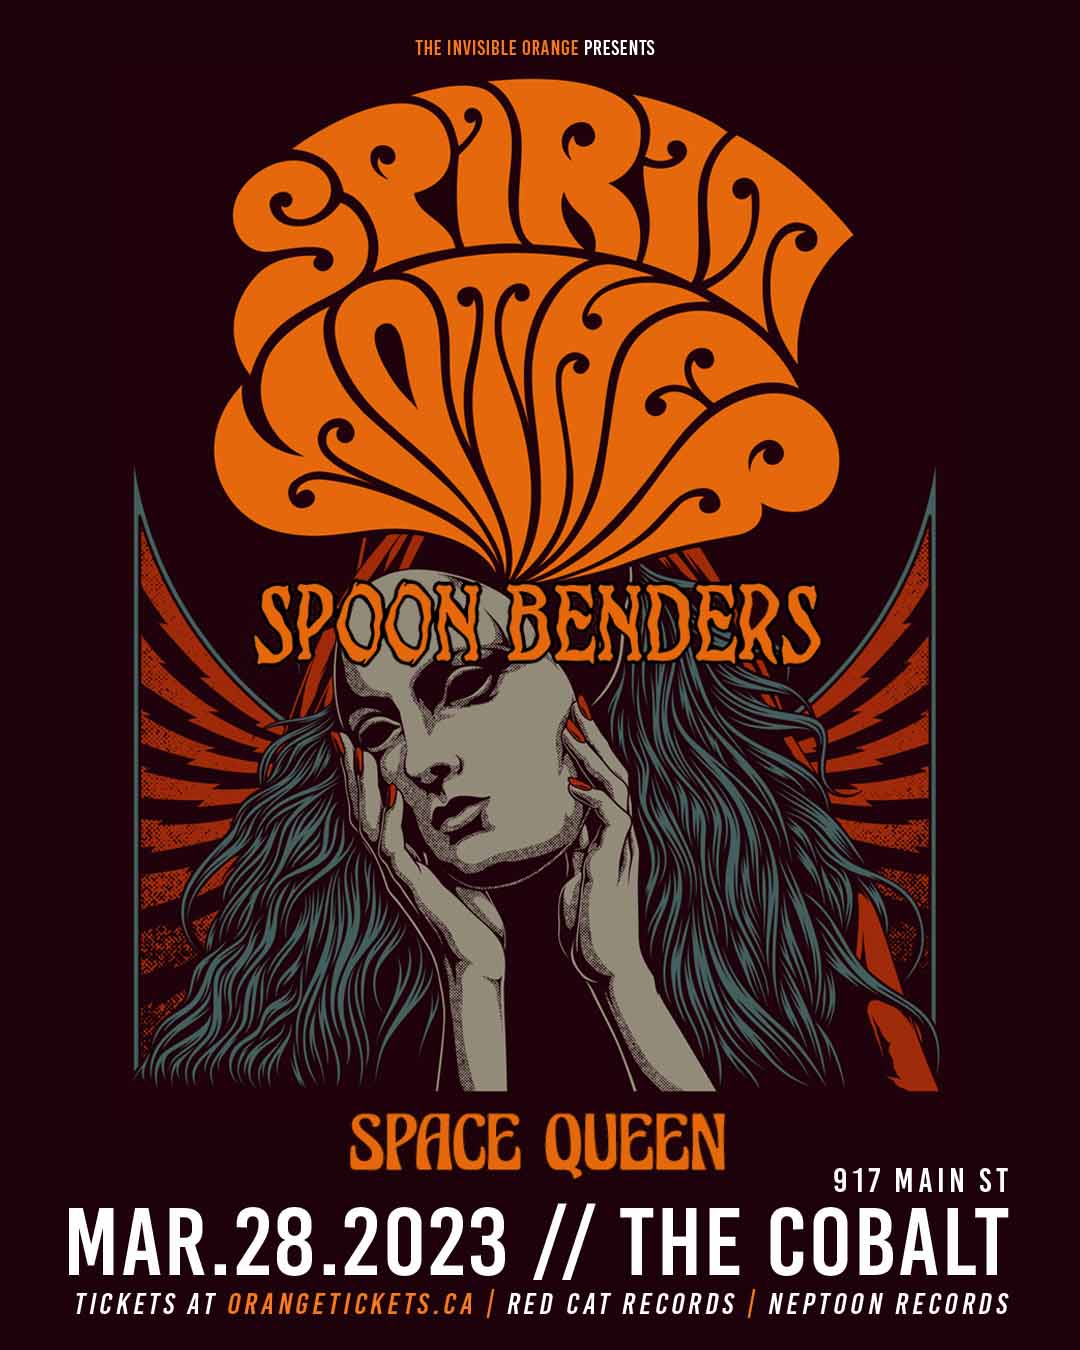 SPIRIT MOTHER // Spoon Benders // Space Queen